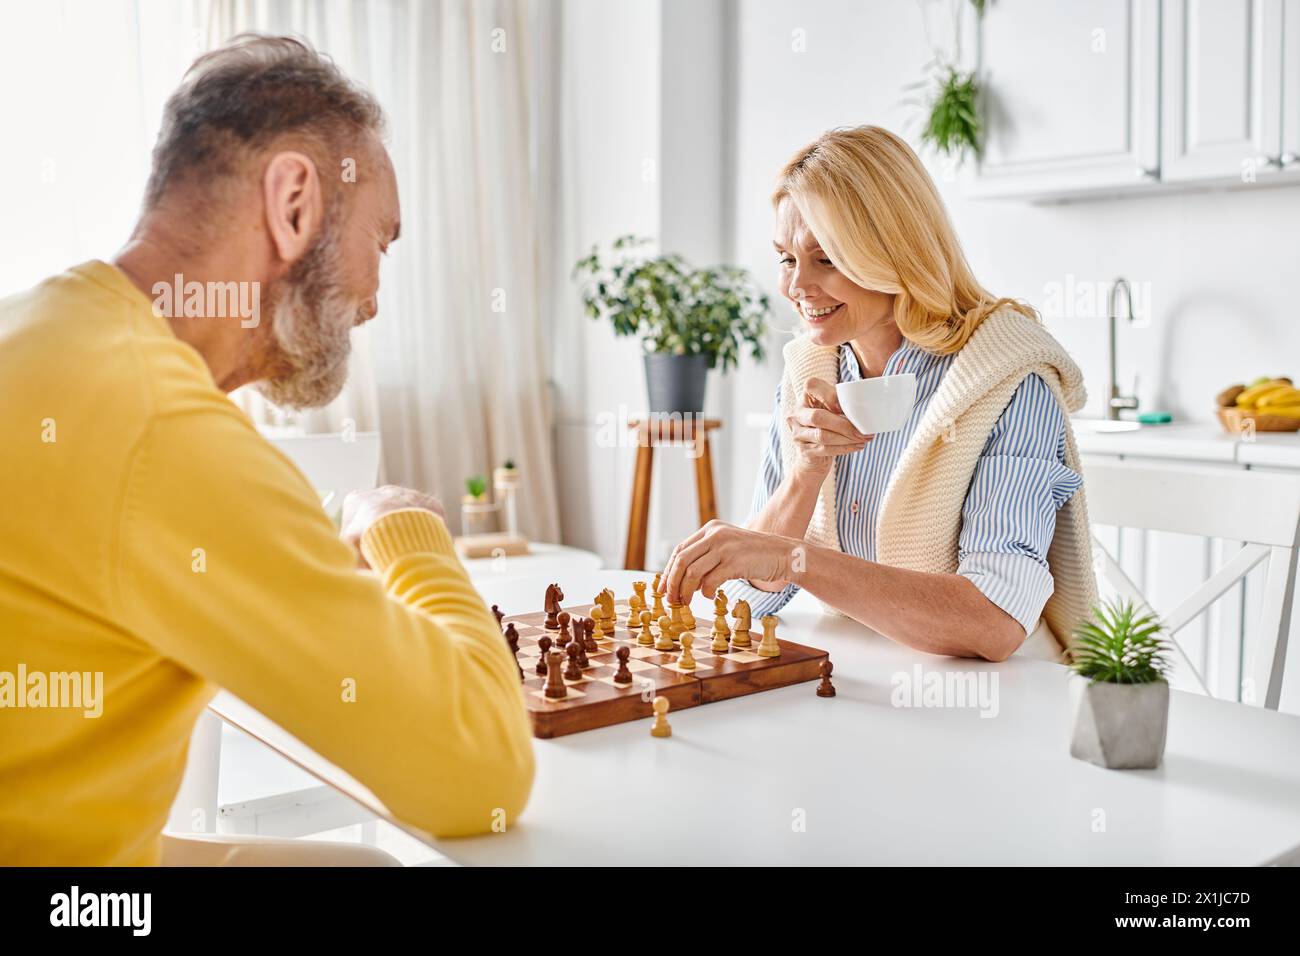 Ein reifes, liebevolles Paar in kuscheliger Homewear, das sich in einem intensiven Schachspiel engagiert, Strategien entwickelt und berechnete Bewegungen macht. Stockfoto